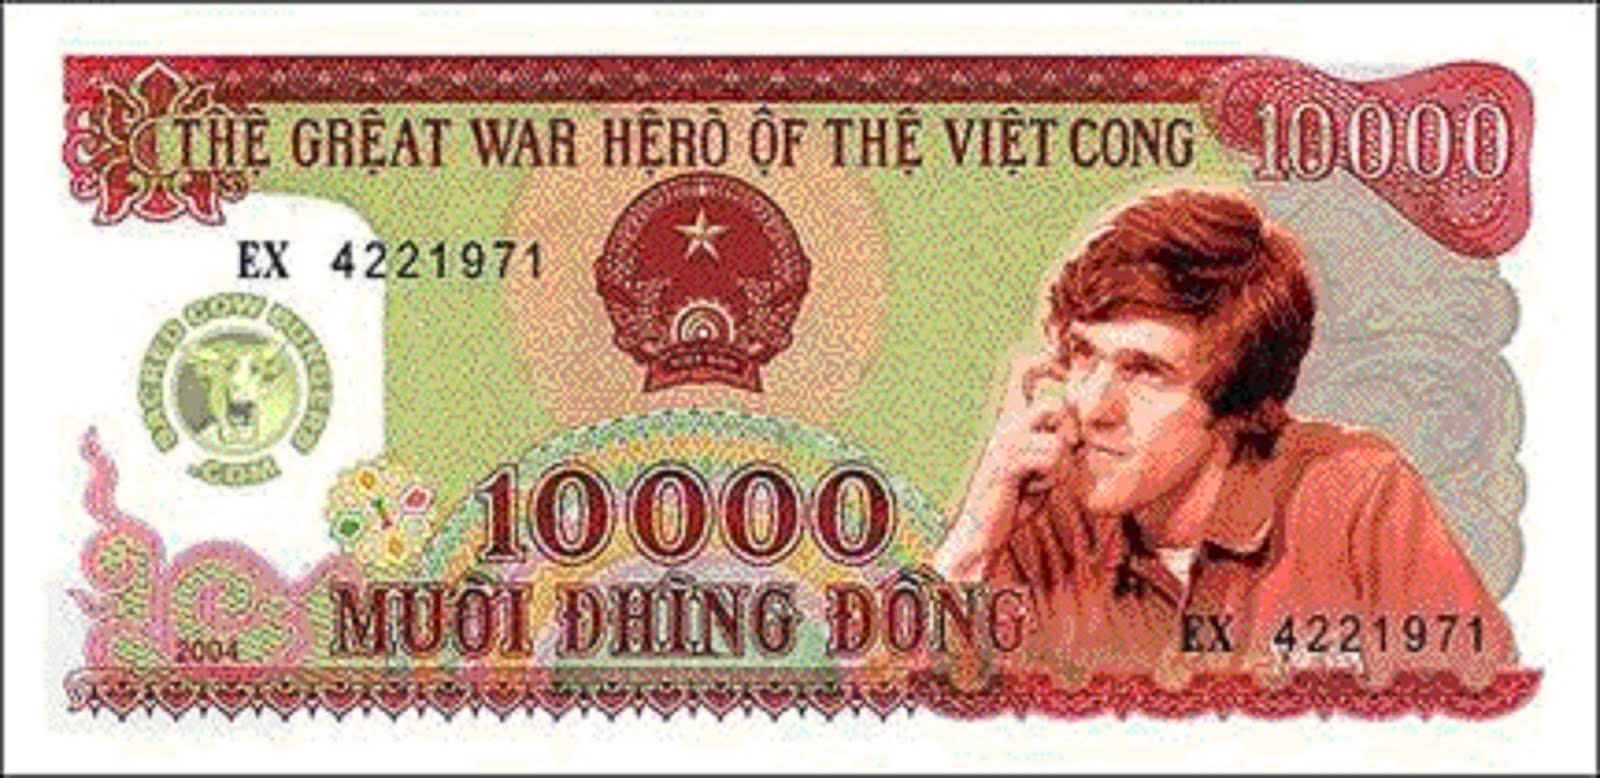 JOHN KERRY A WAR HERO TO THE VIET CONG IN HANOI